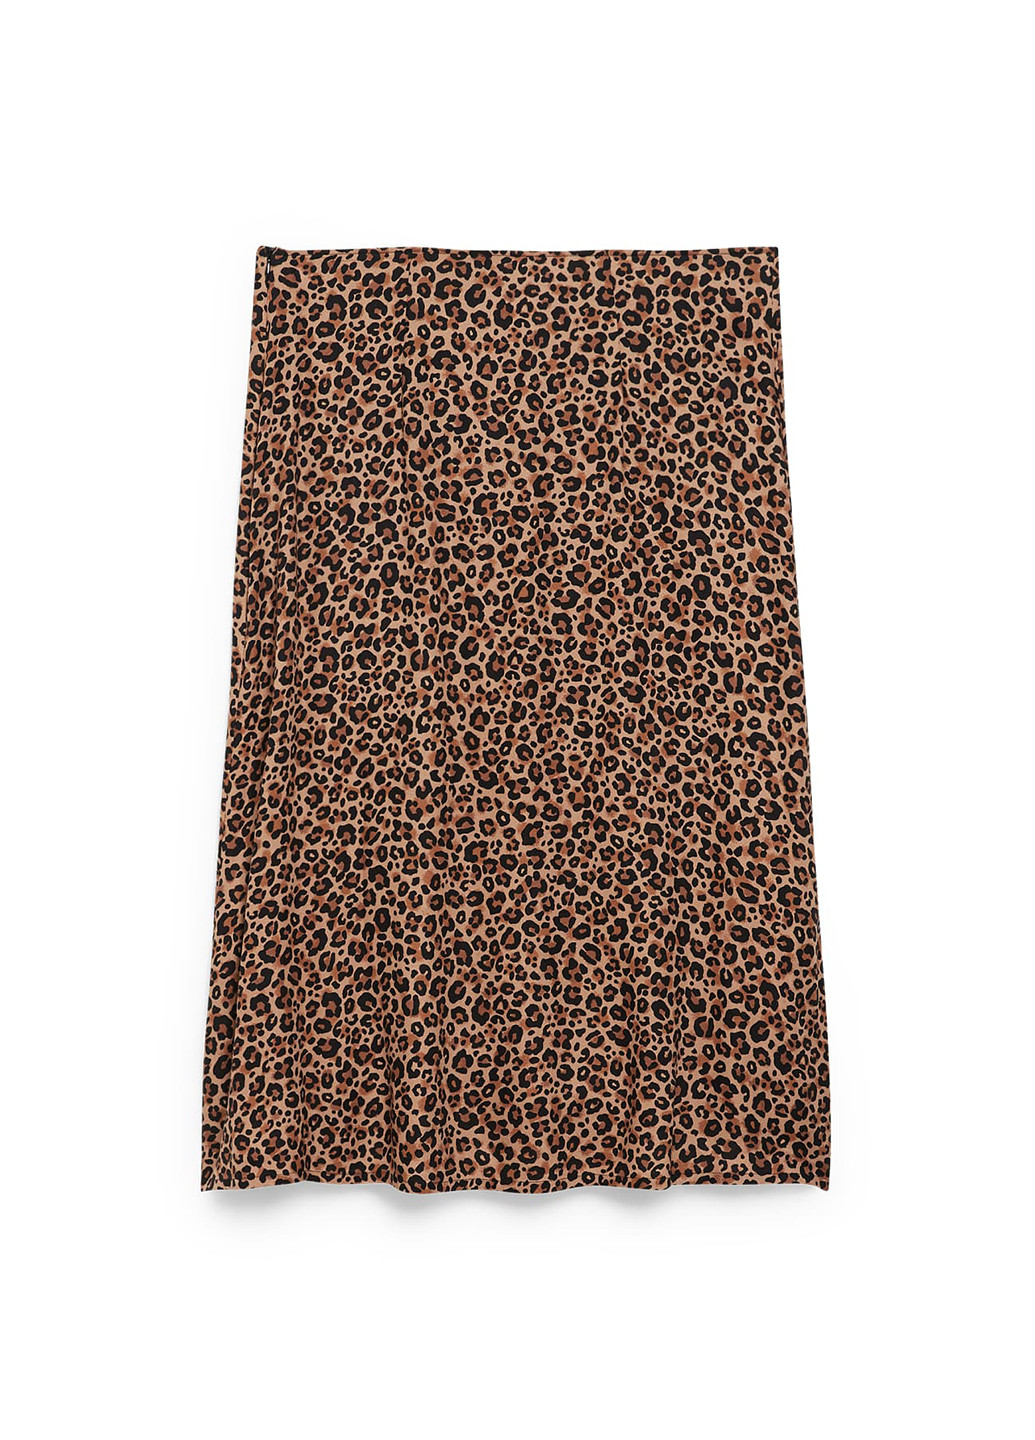 Коричневая кэжуал леопардовая юбка C&A а-силуэта (трапеция)